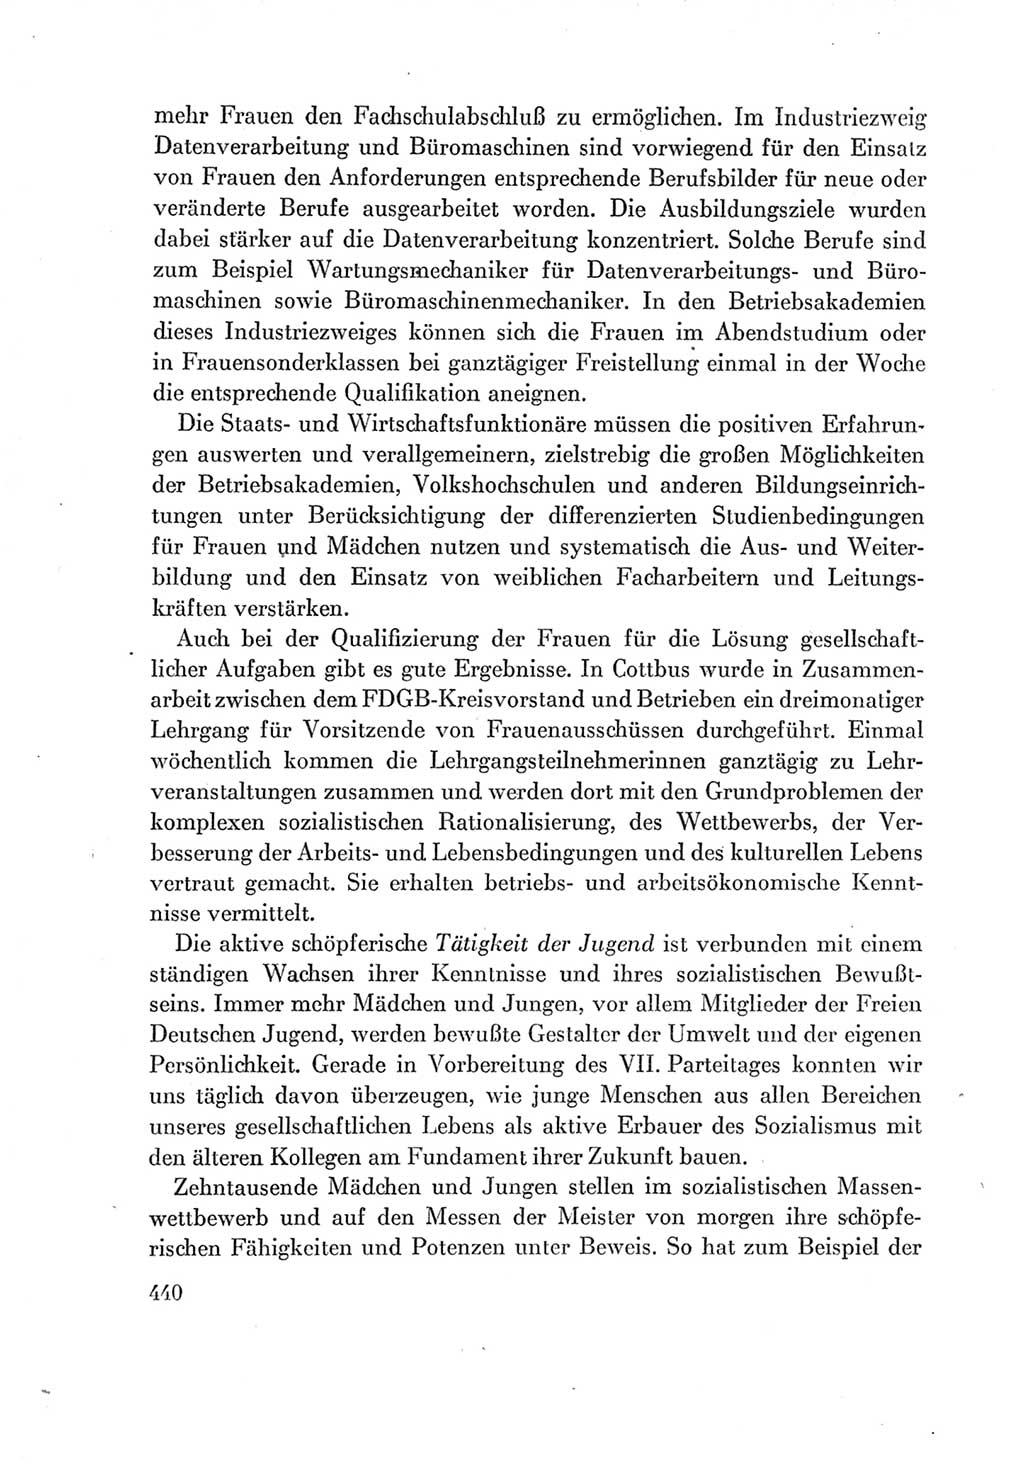 Protokoll der Verhandlungen des Ⅶ. Parteitages der Sozialistischen Einheitspartei Deutschlands (SED) [Deutsche Demokratische Republik (DDR)] 1967, Band Ⅰ, Seite 440 (Prot. Verh. Ⅶ. PT SED DDR 1967, Bd. Ⅰ, S. 440)